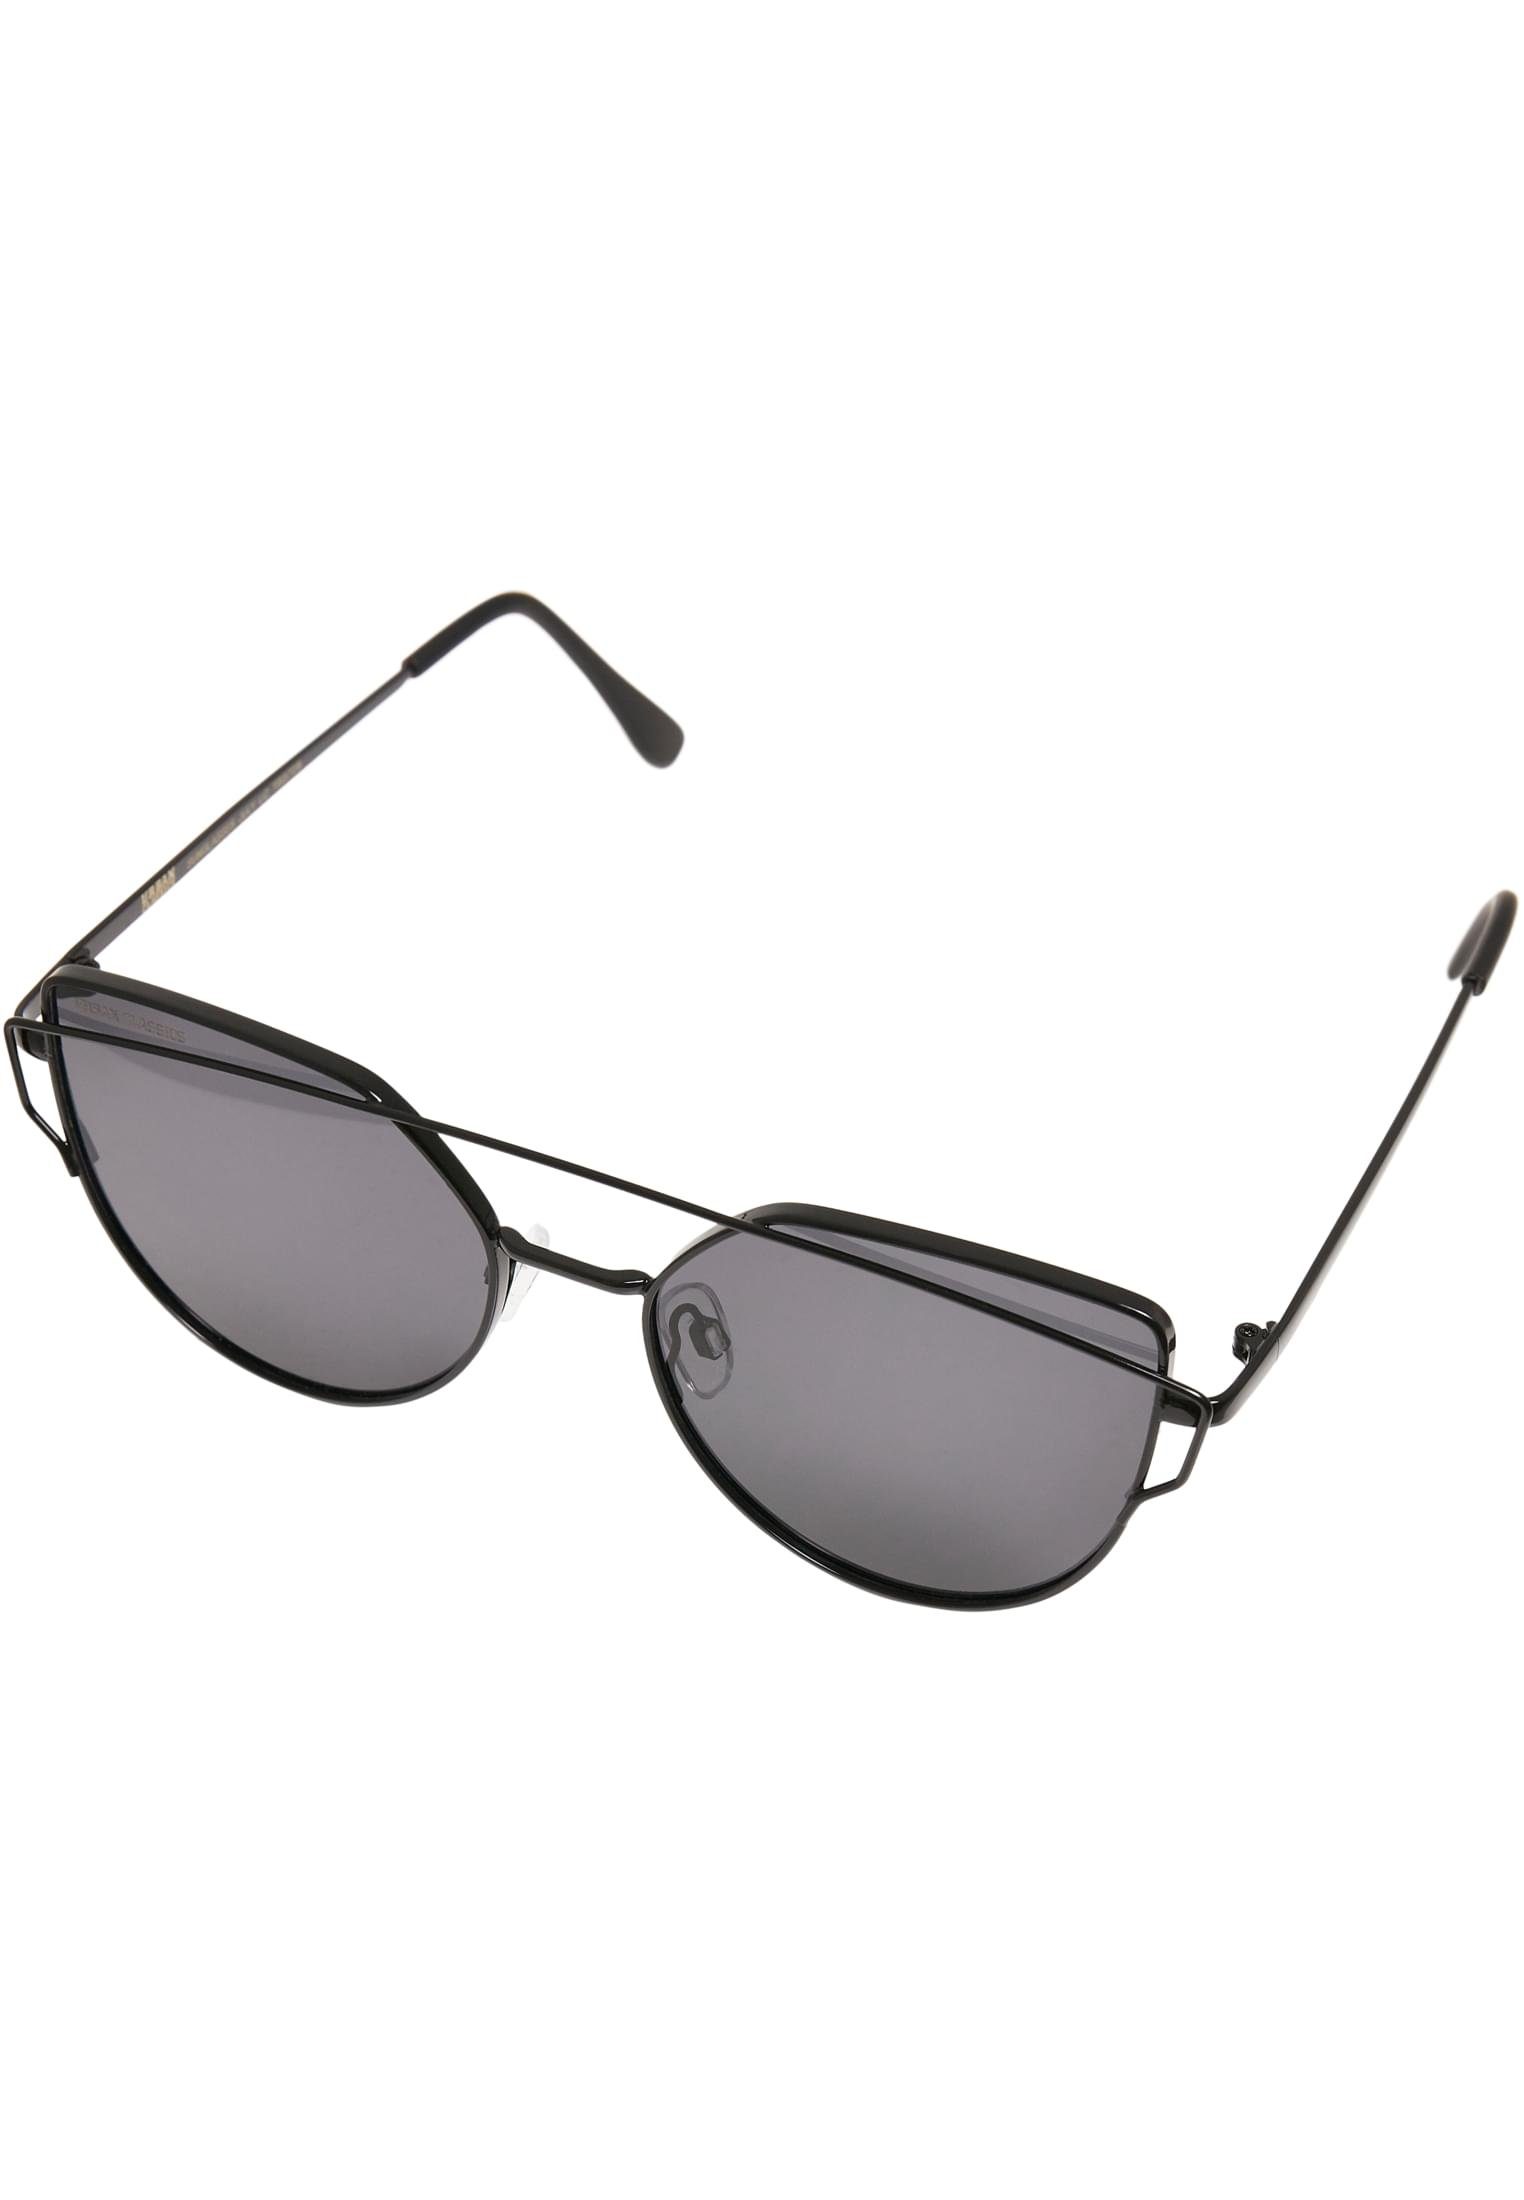 URBAN CLASSICS Sonnenbrille Sunglasses July black UC Accessoires